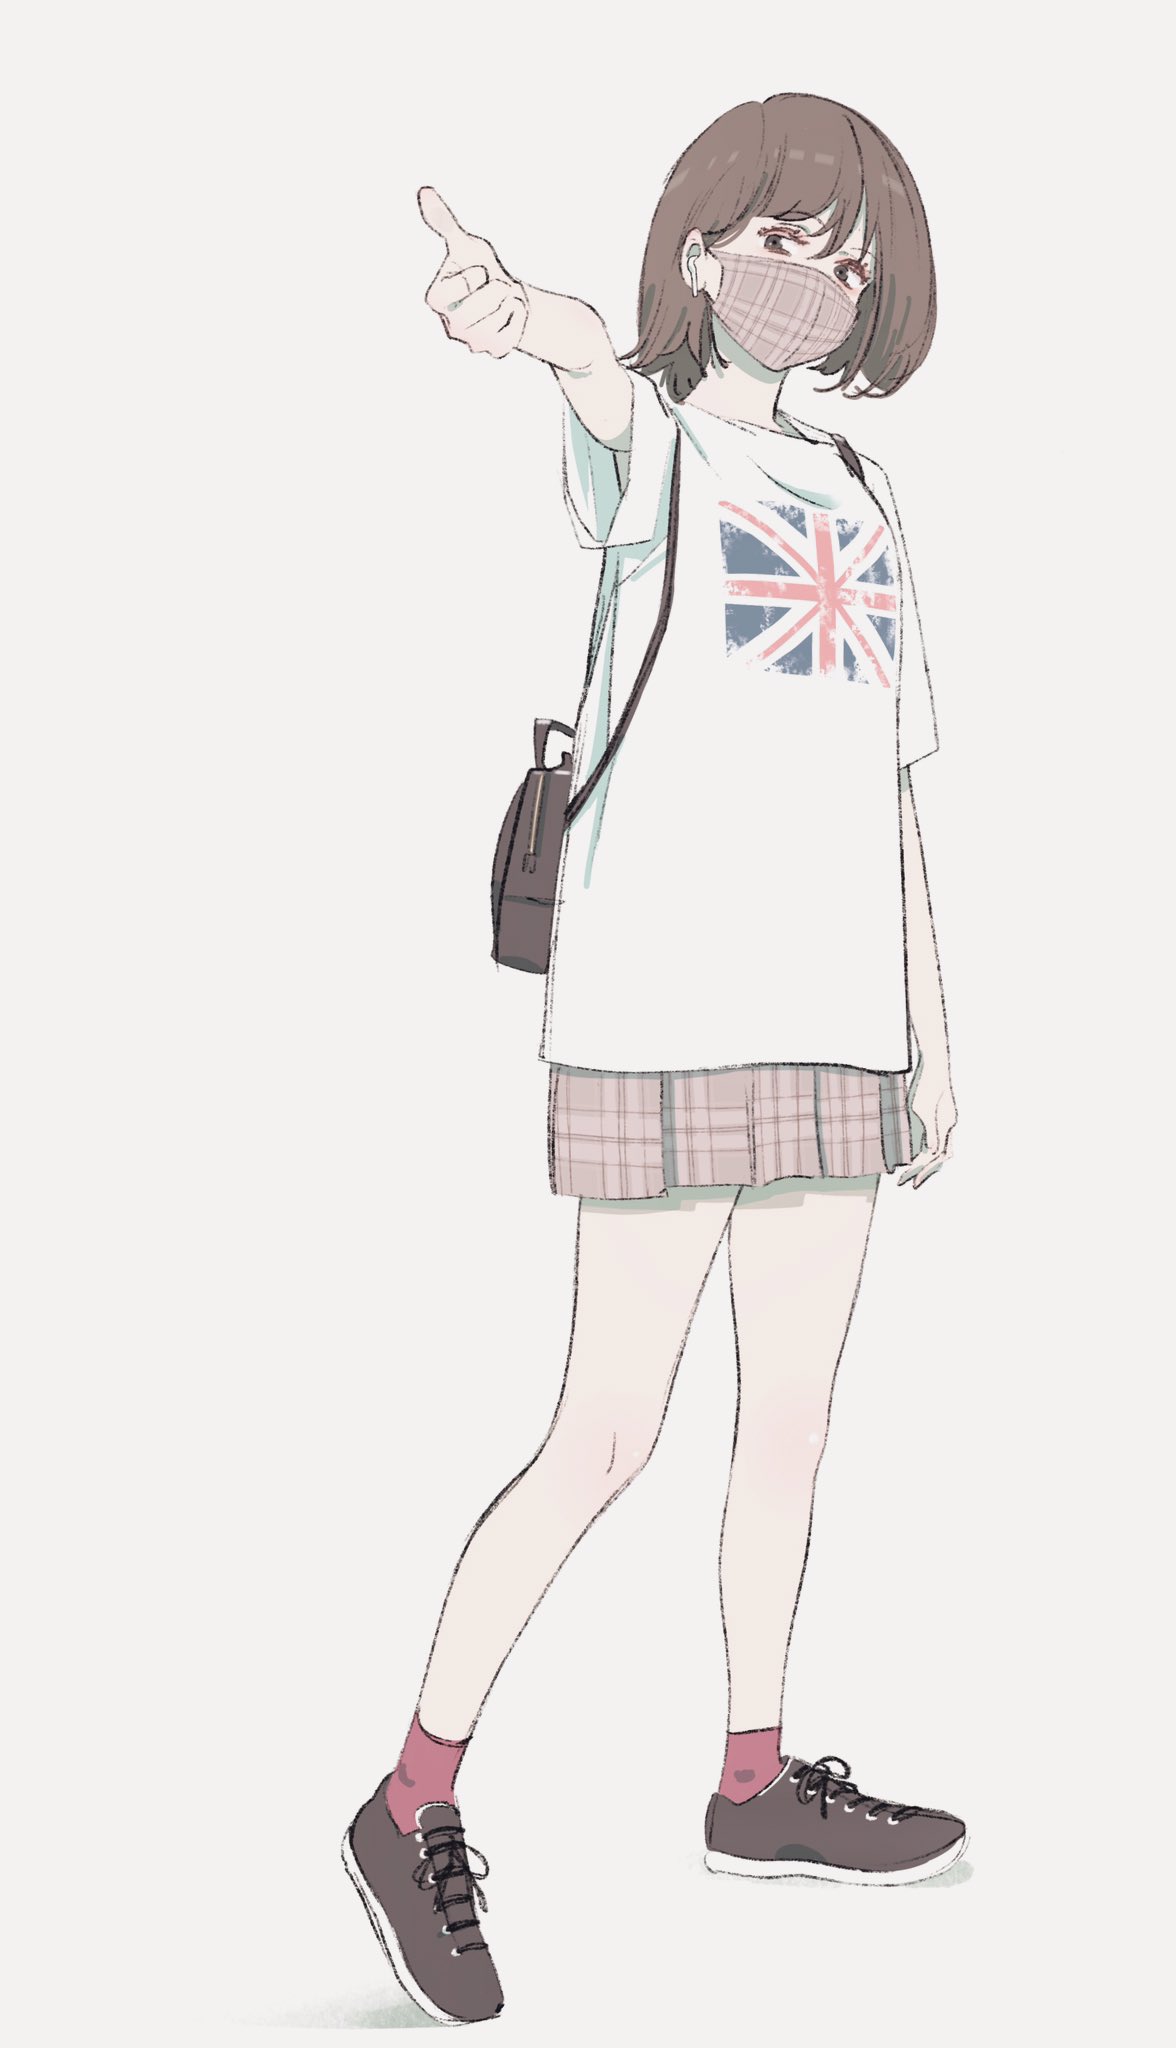 埼玉 むかし友達がイギリス国旗 着てる子は大体かわいいって言ってた T Co Rc1wfztppw Twitter